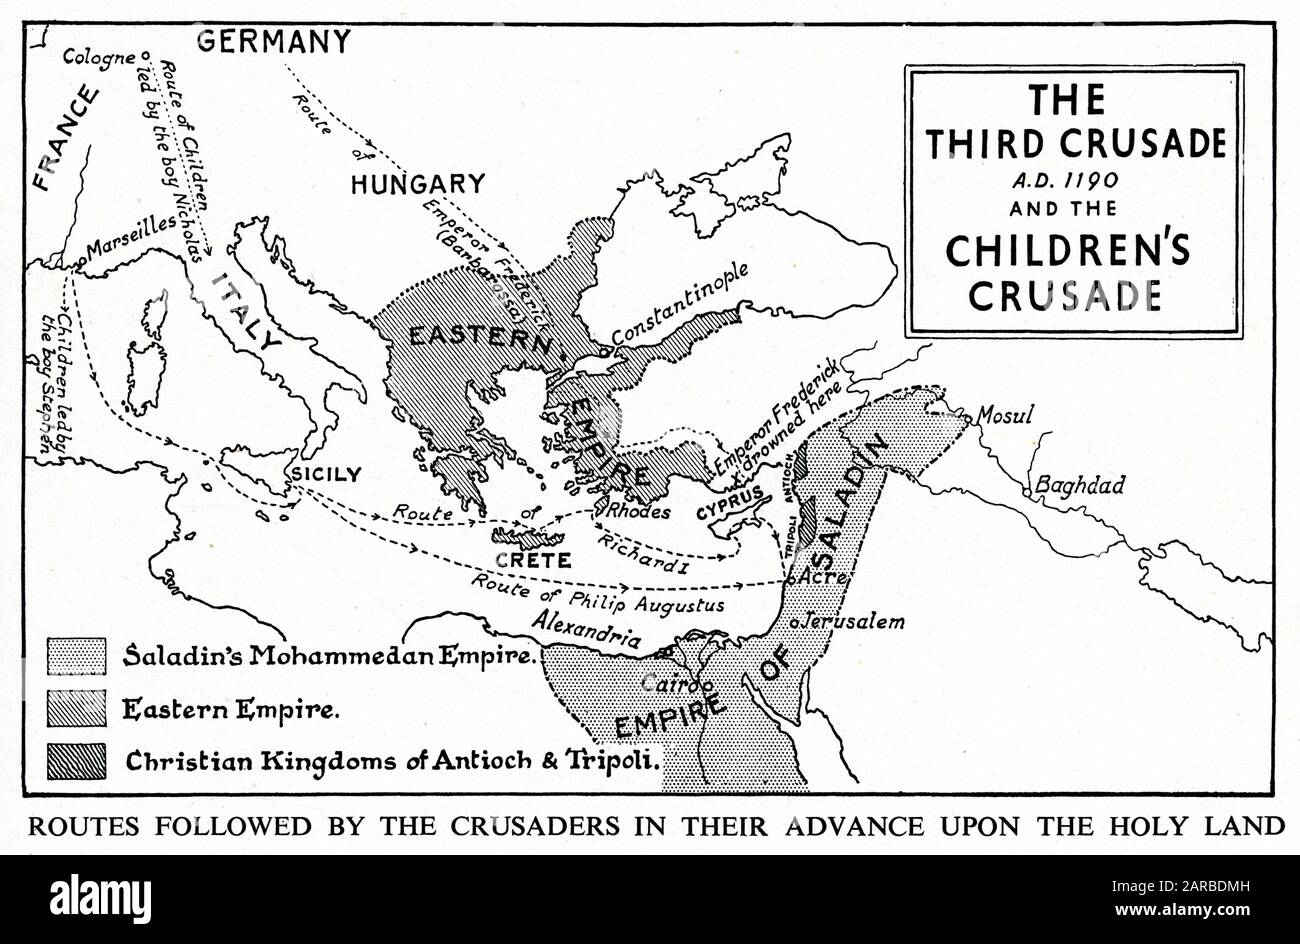 Carte de la troisième croisade et de la croisade des enfants, montrant divers itinéraires et territoires. Banque D'Images